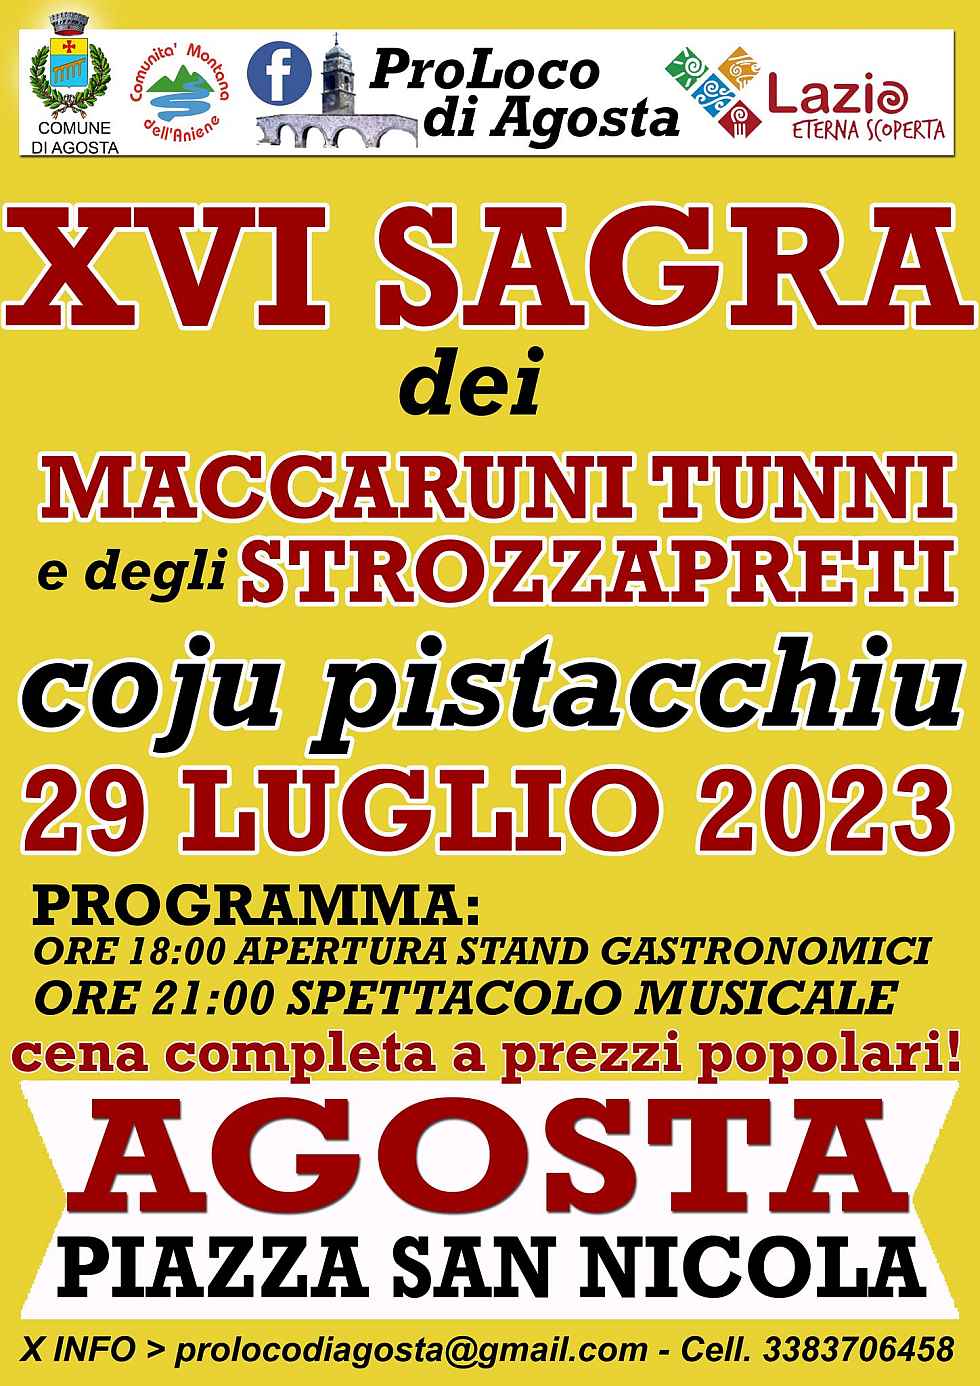 Agosta (RM)
"15^ Sagra dei Macaruni Tunni coju Pistacchiu"
30 Luglio 2022 